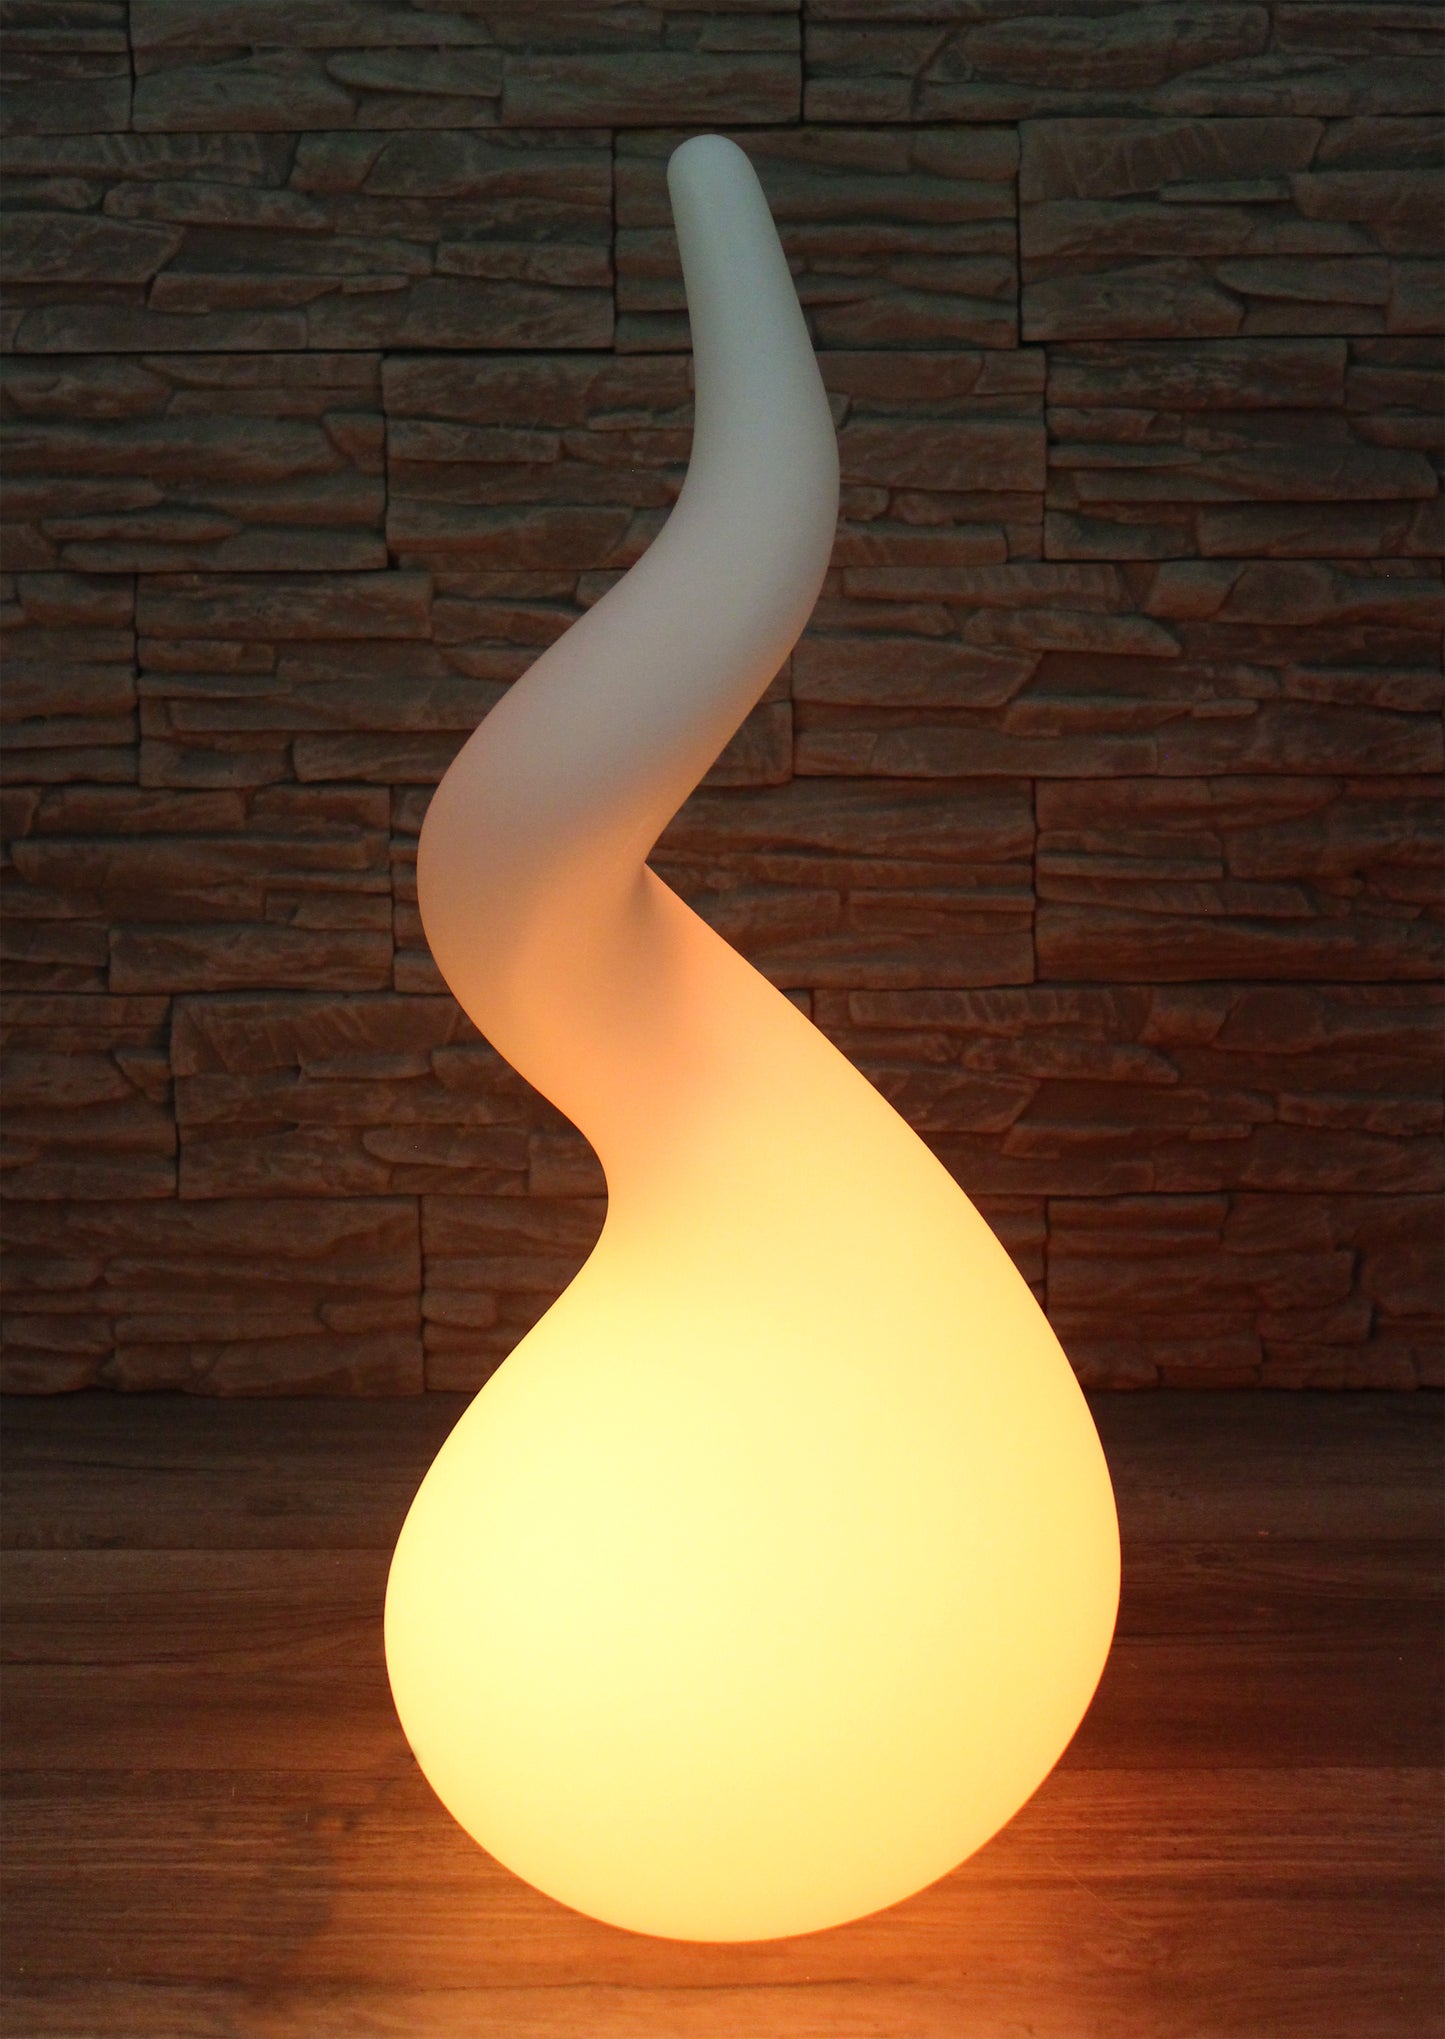 Design Stehlampe 71 x 31cm Farbwechsel mit Akku PL411 kabellos Lampe Innen und Außen Dekoleuchte Gartenlampe moderne Leuchte Skulptur abstrakt